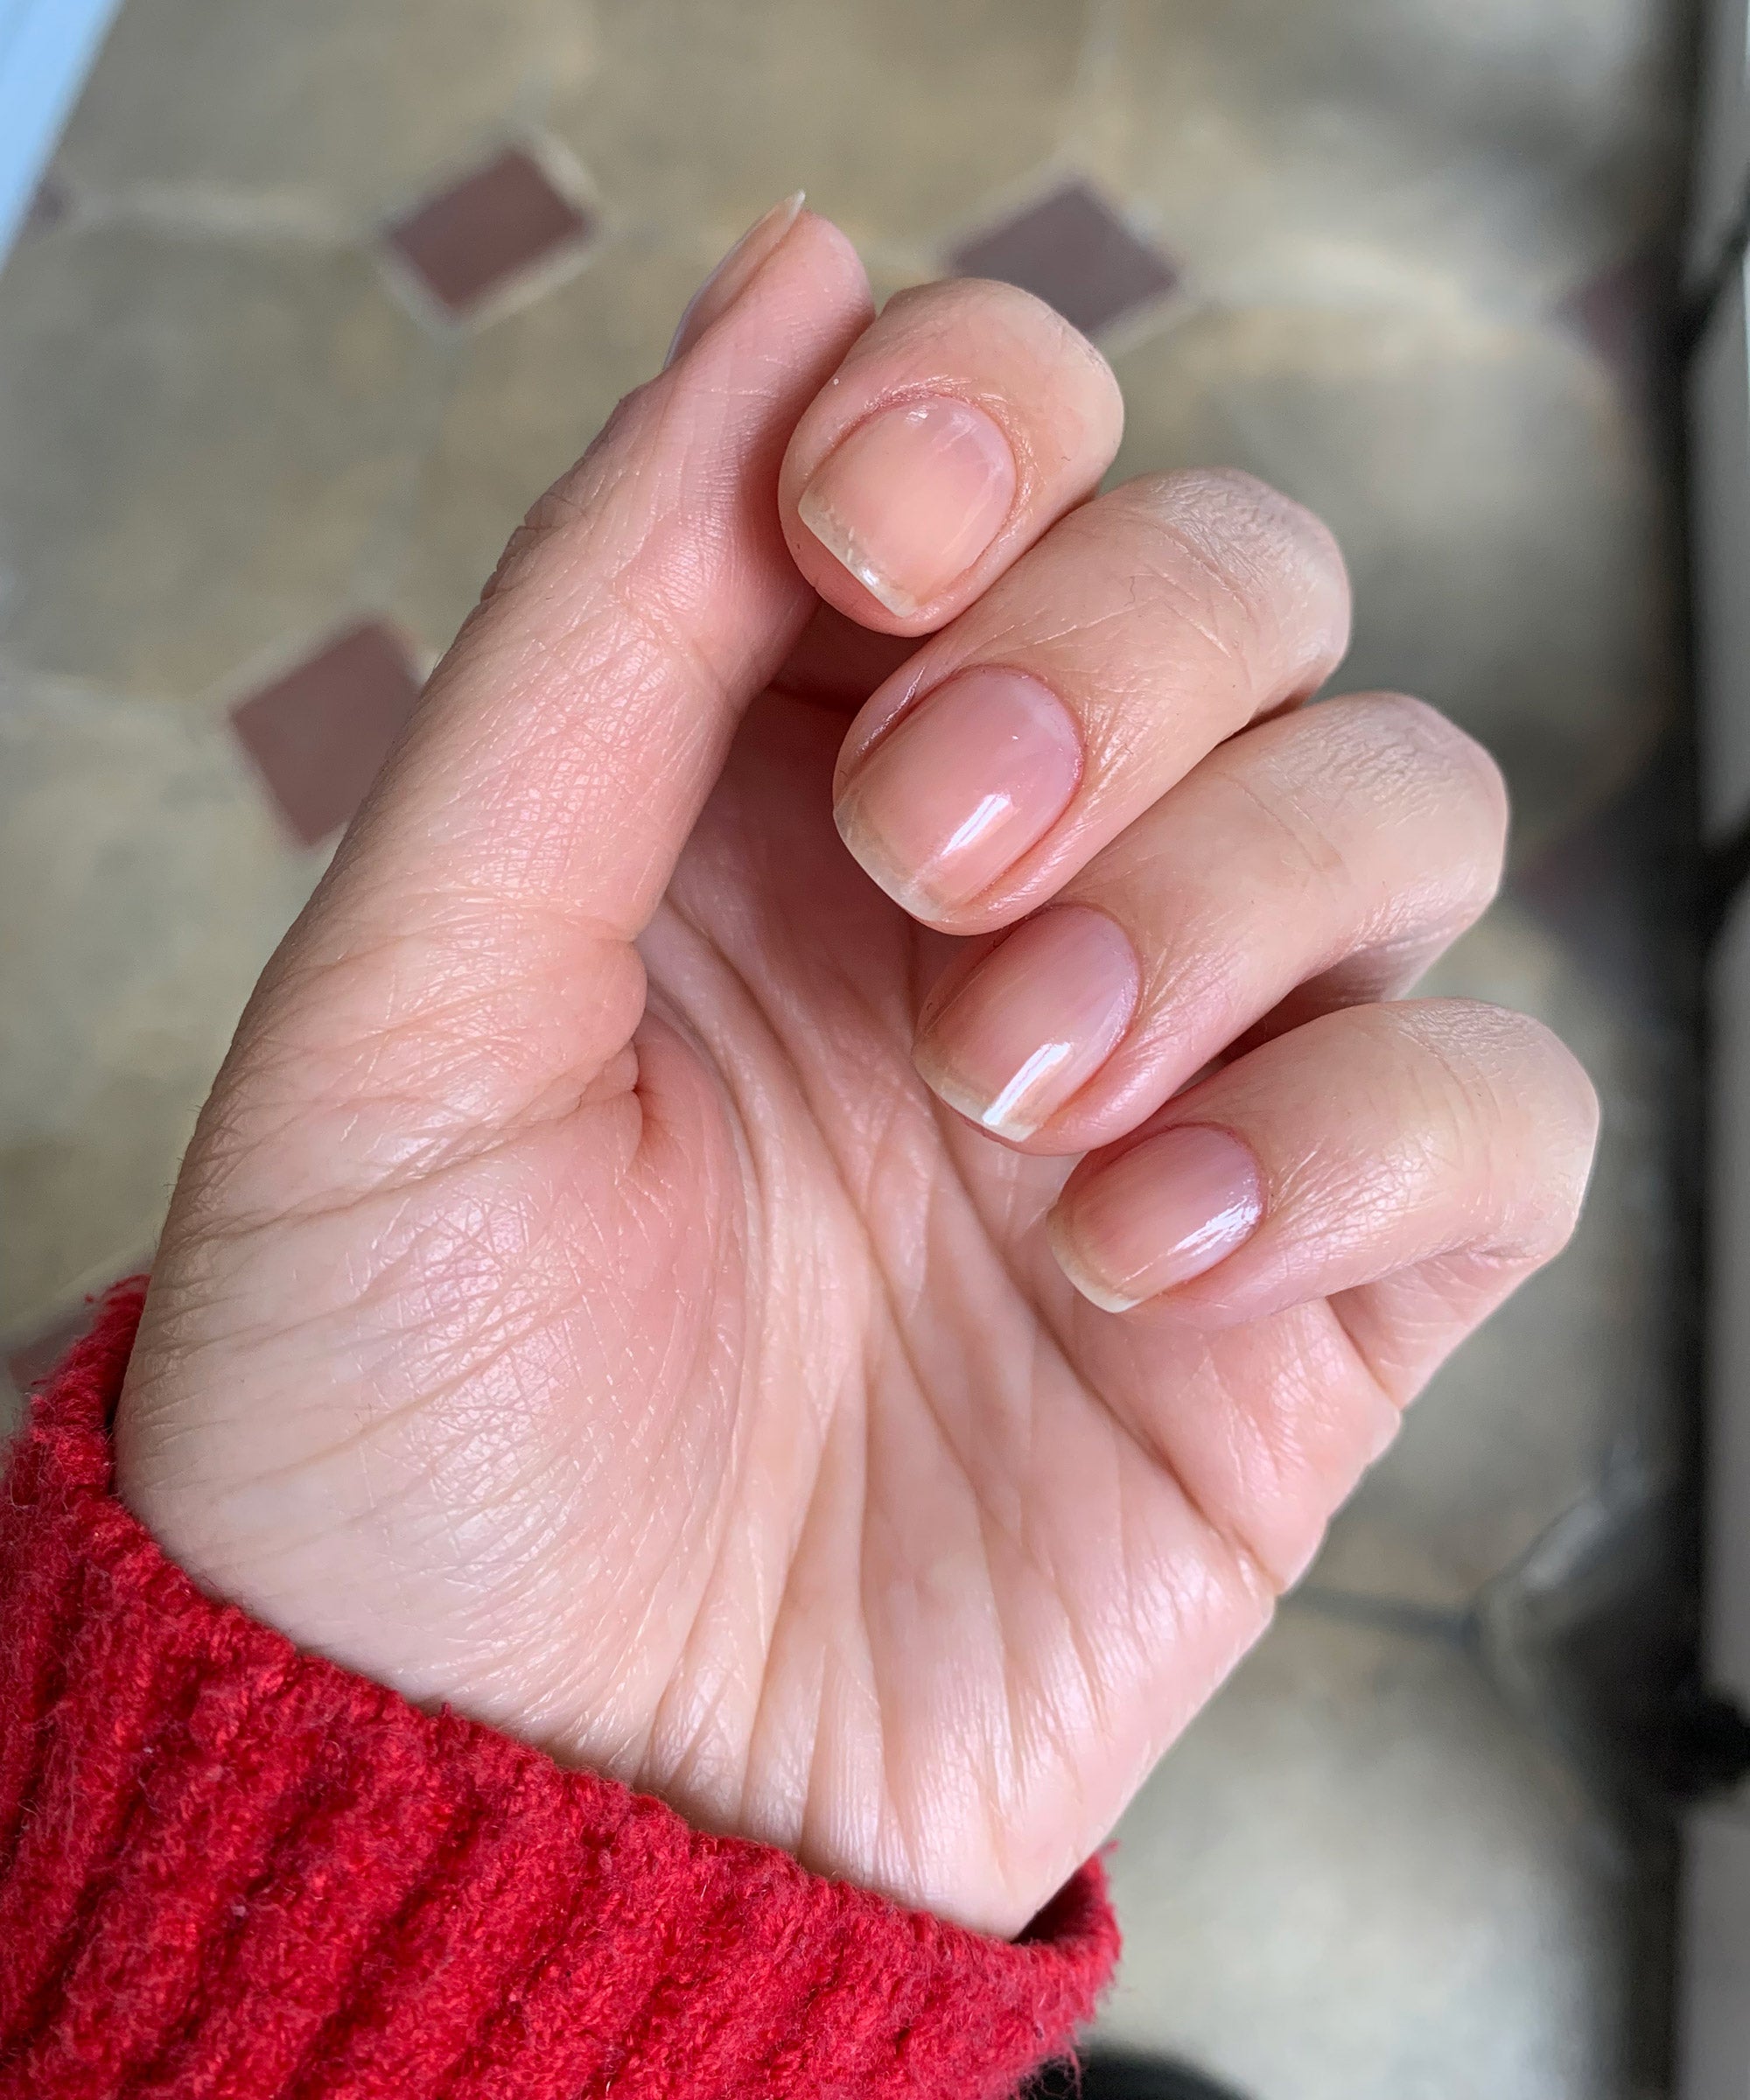 Natural Nails. Just a top coat to keep them shiny! : r/RedditLaqueristas